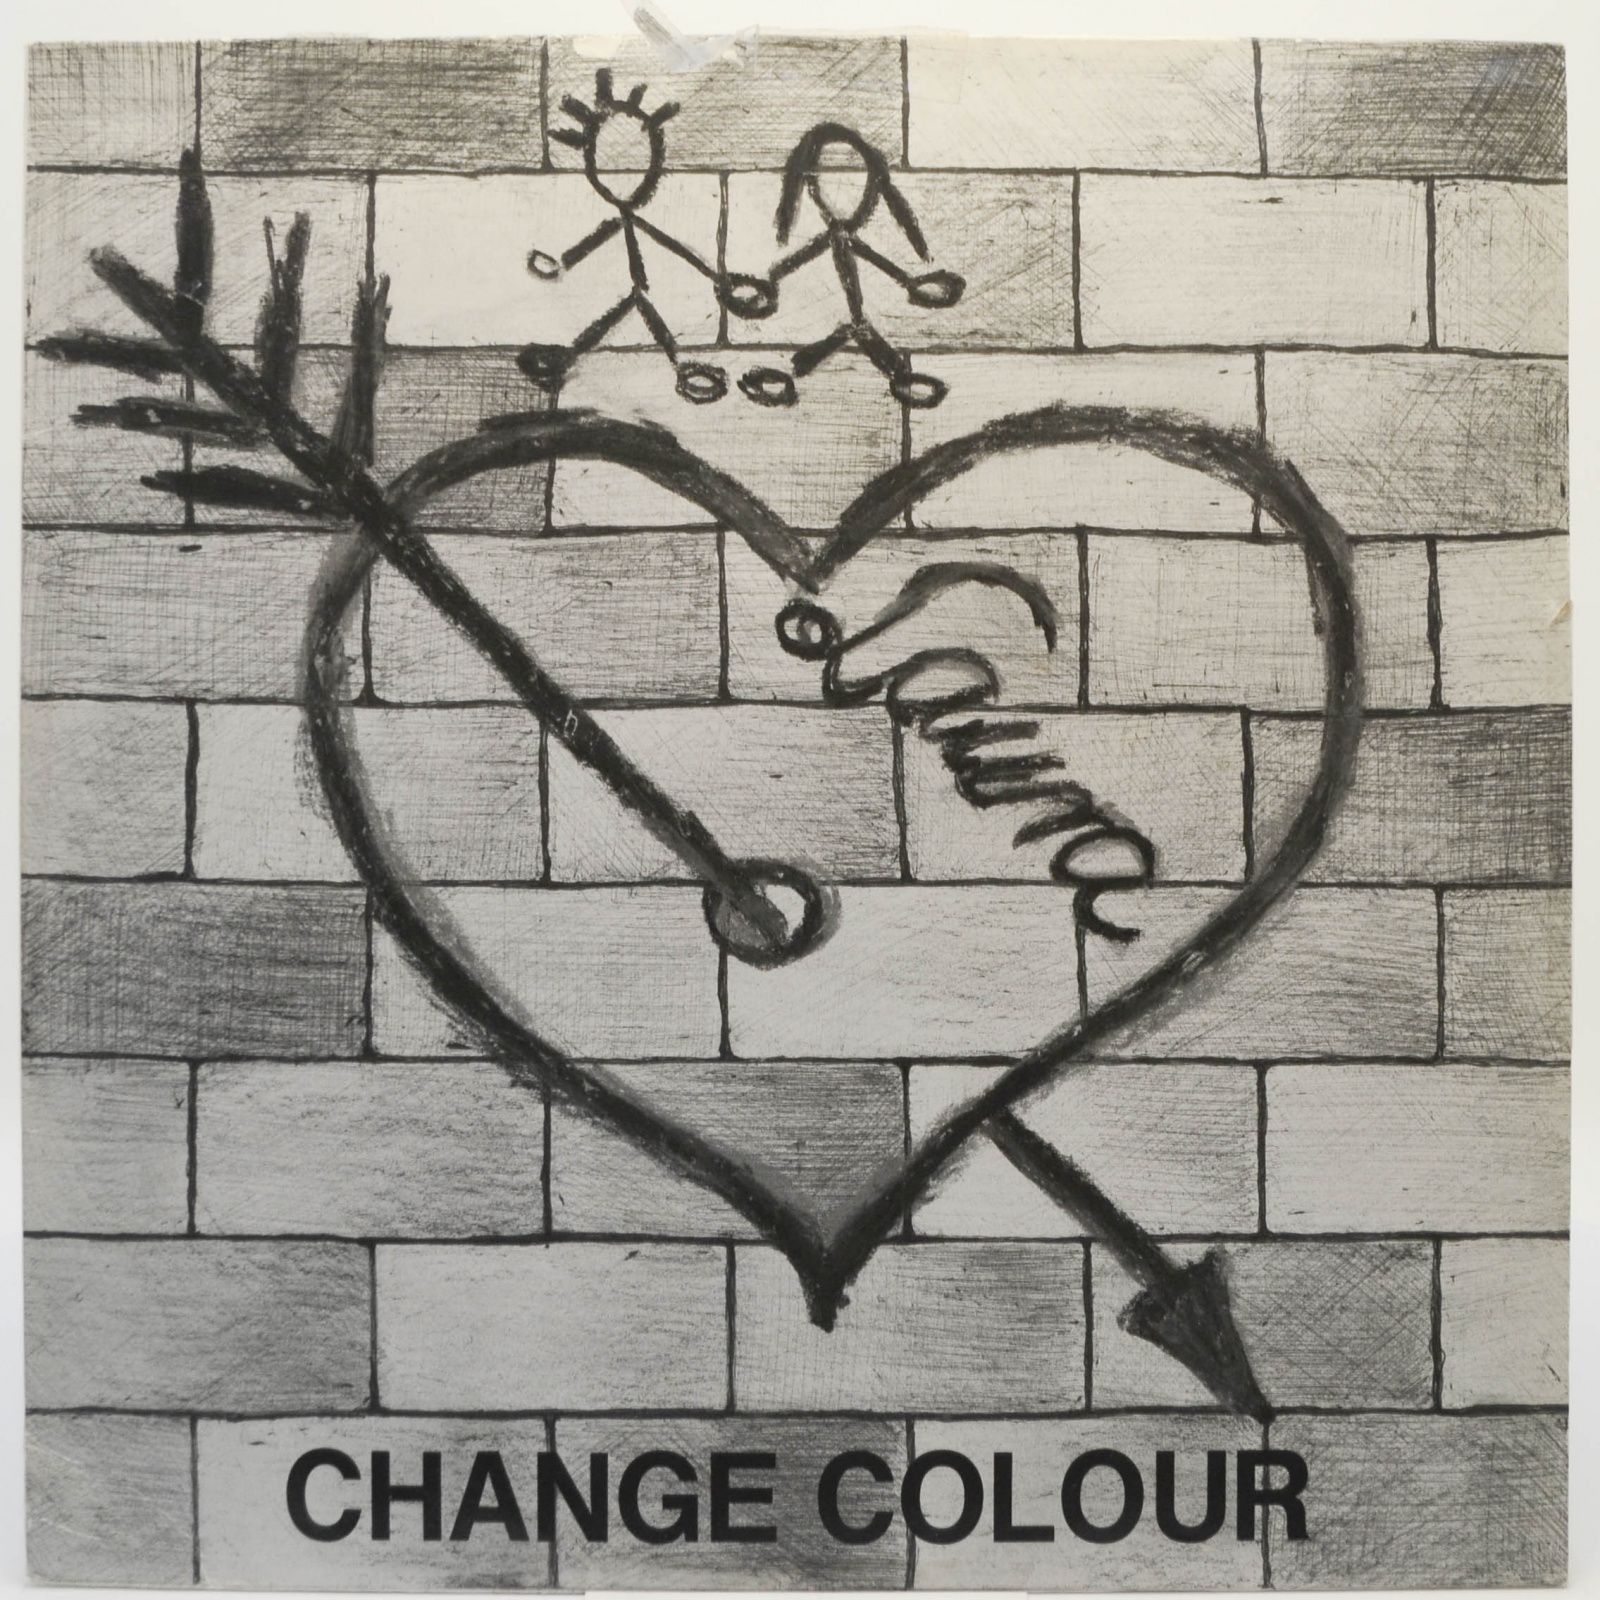 Change Colour, 1990